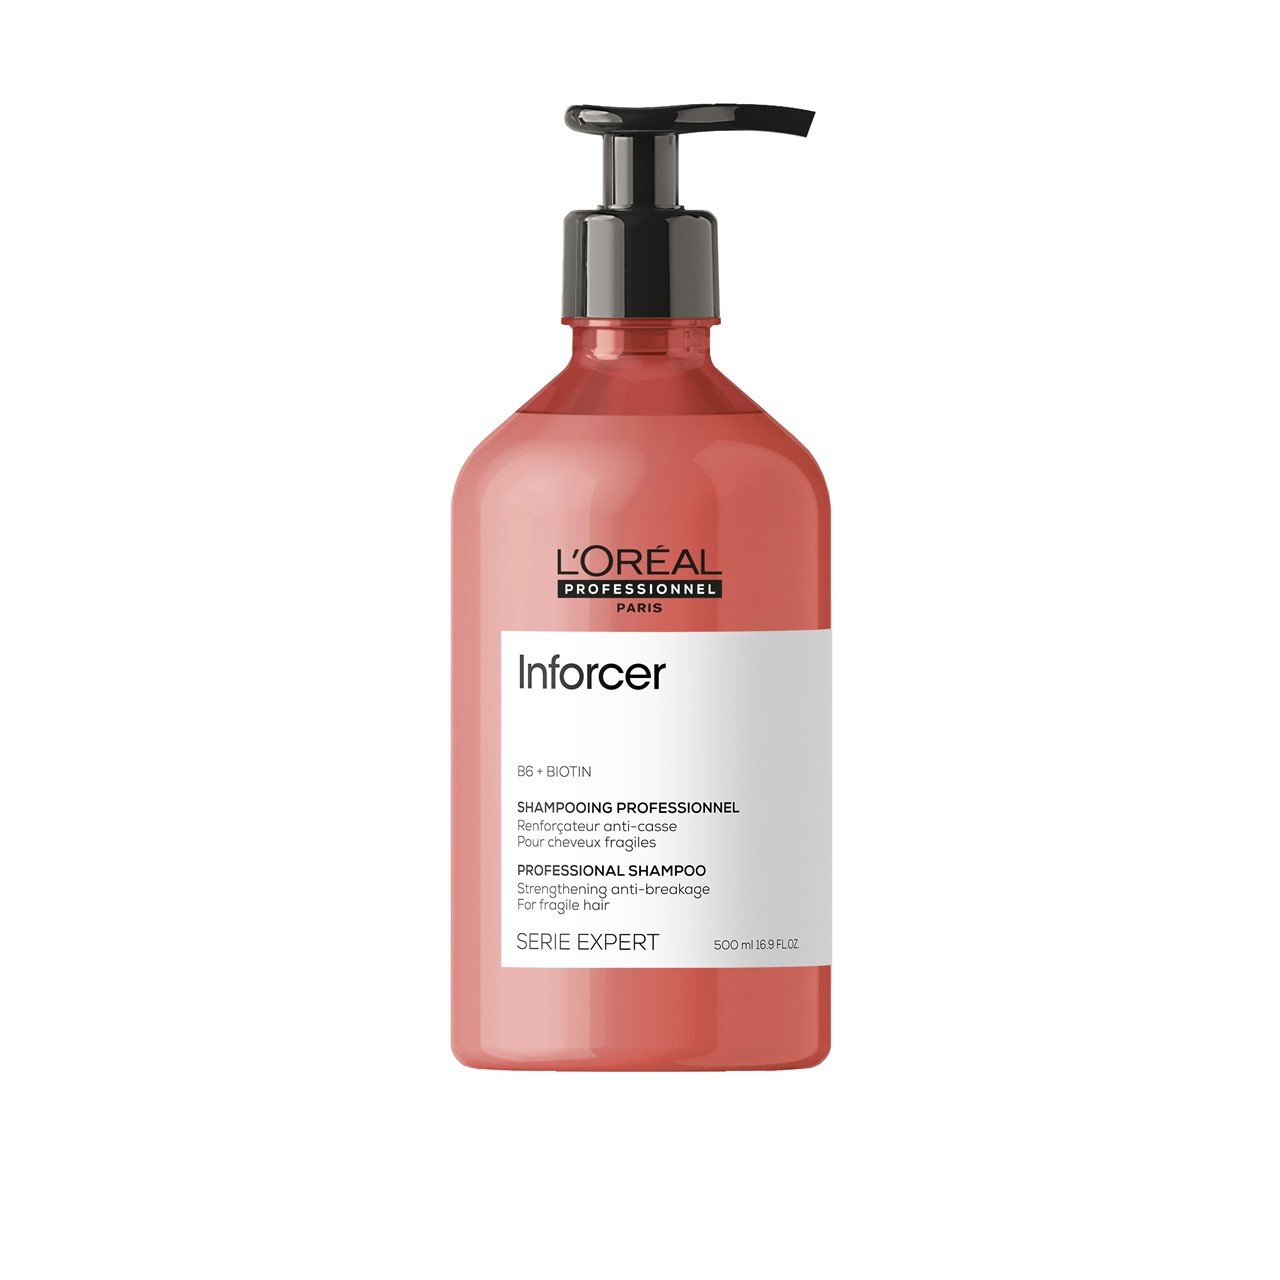 L'Oréal Professionnel Série Expert Inforcer Shampoo 500ml (16.91fl oz)